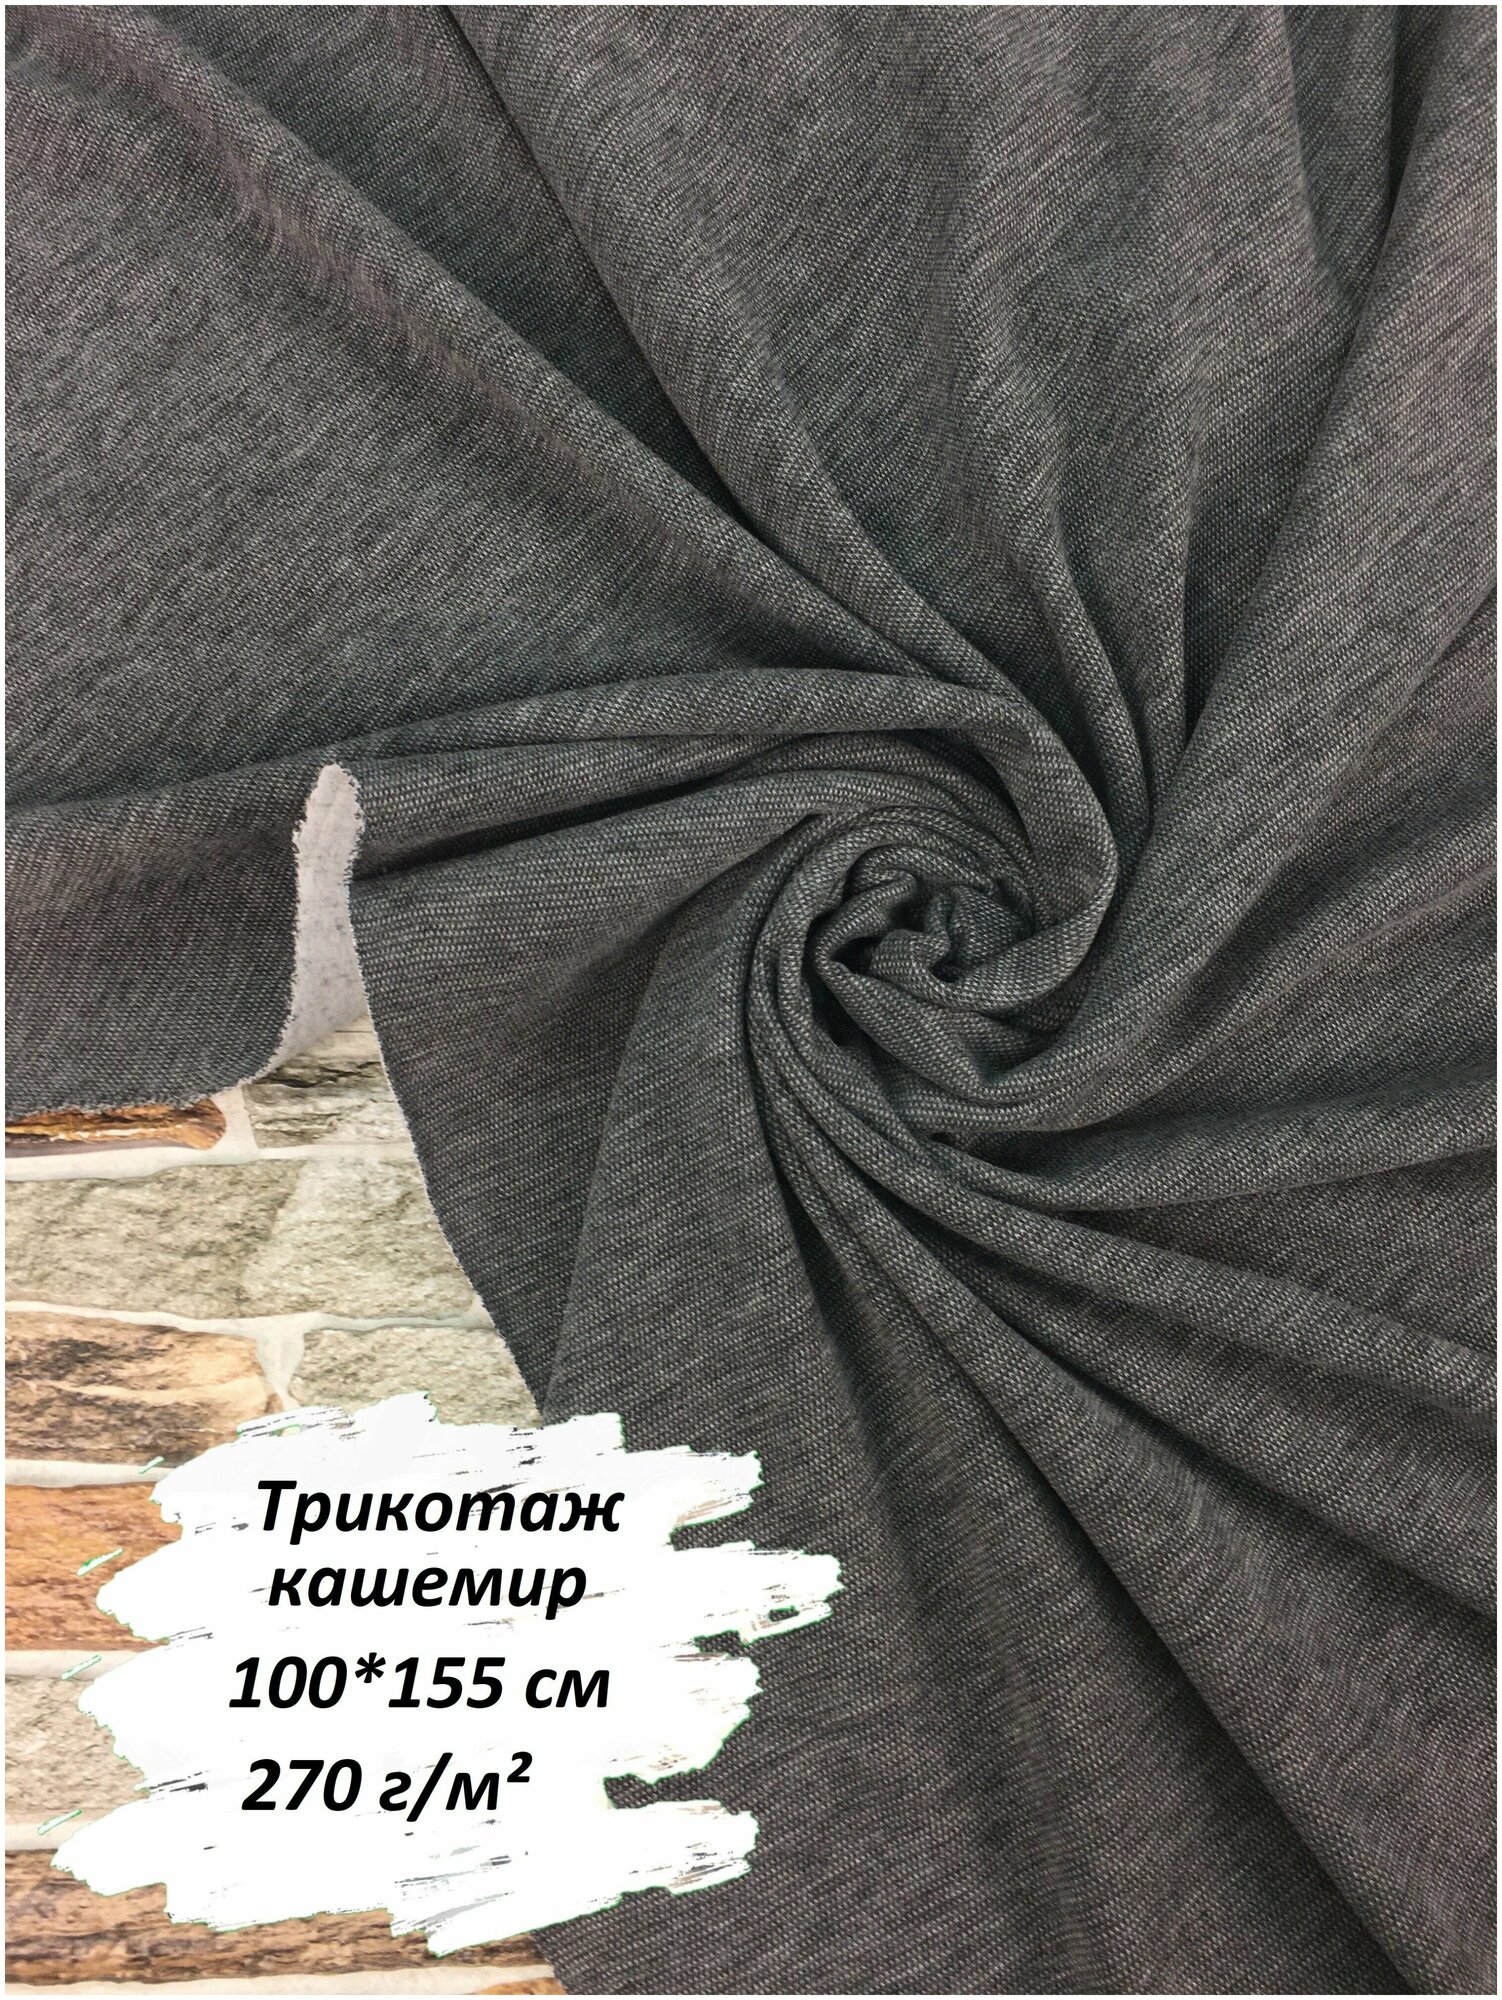 Ткань для шитья кашемир, 100х155 см, 270 г/м2, цвет темно-серый меланж